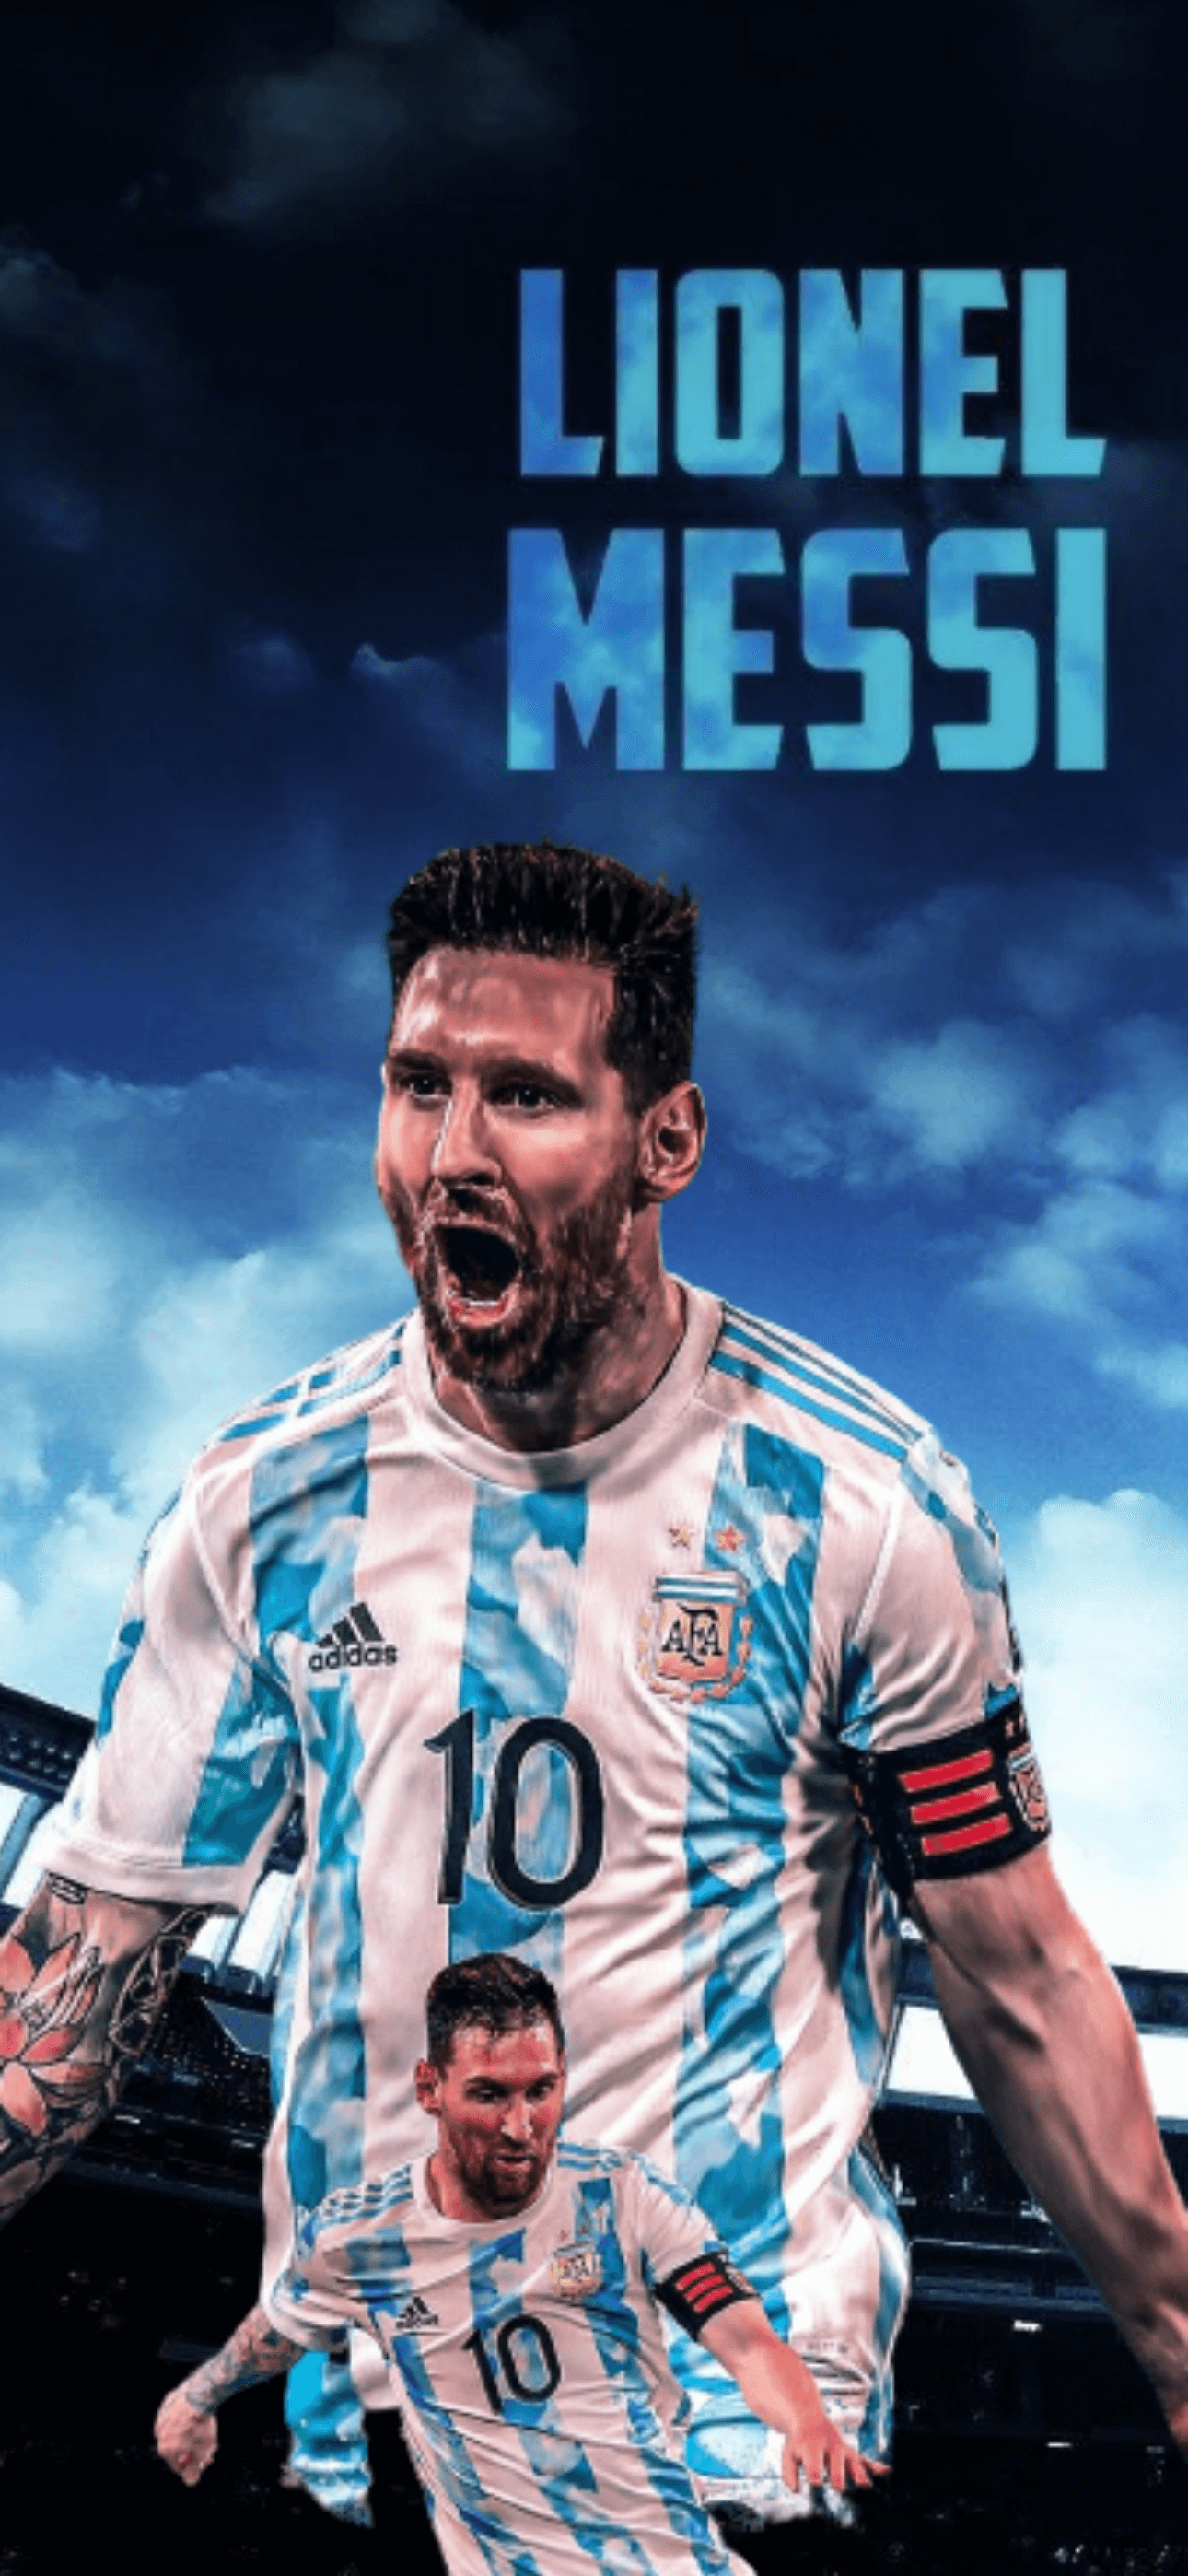 Hình nền Lionel Messi Wallpaper HD Argentina - Với chất lượng HD nổi bật, hình nền này sẽ giúp chiêm ngưỡng vẻ đẹp của Lionel Messi một cách rõ ràng và chi tiết nhất có thể. Bạn sẽ chắc chắn cảm thấy ngạc nhiên với độ sắc nét và sống động.